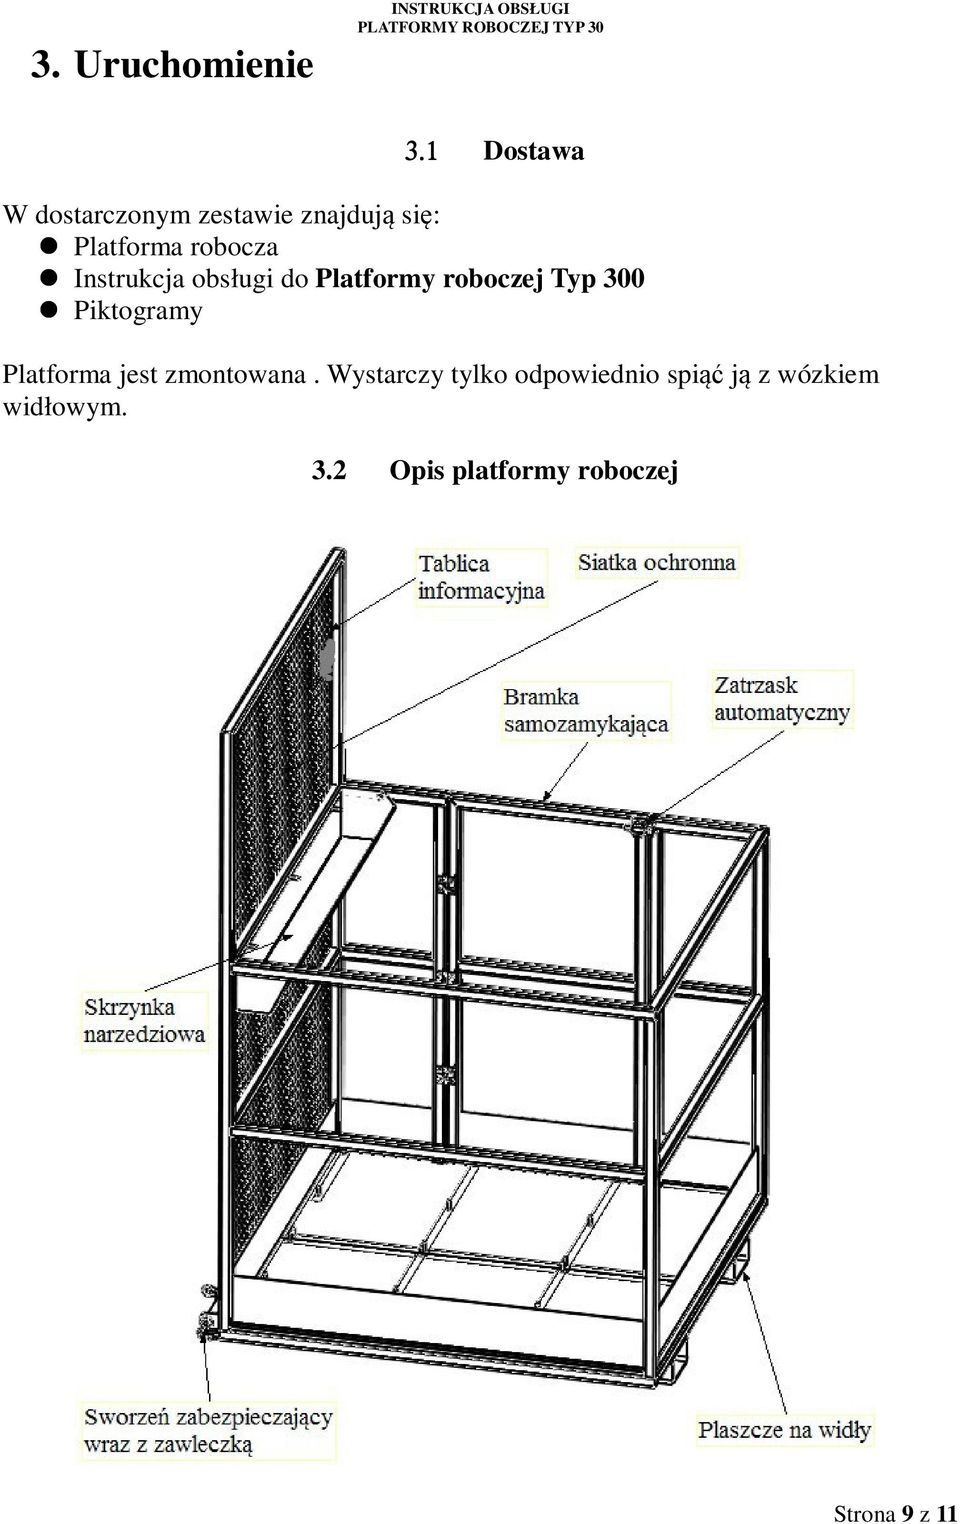 Instrukcja obsługi do Platformy roboczej Typ 300 Piktogramy Platforma